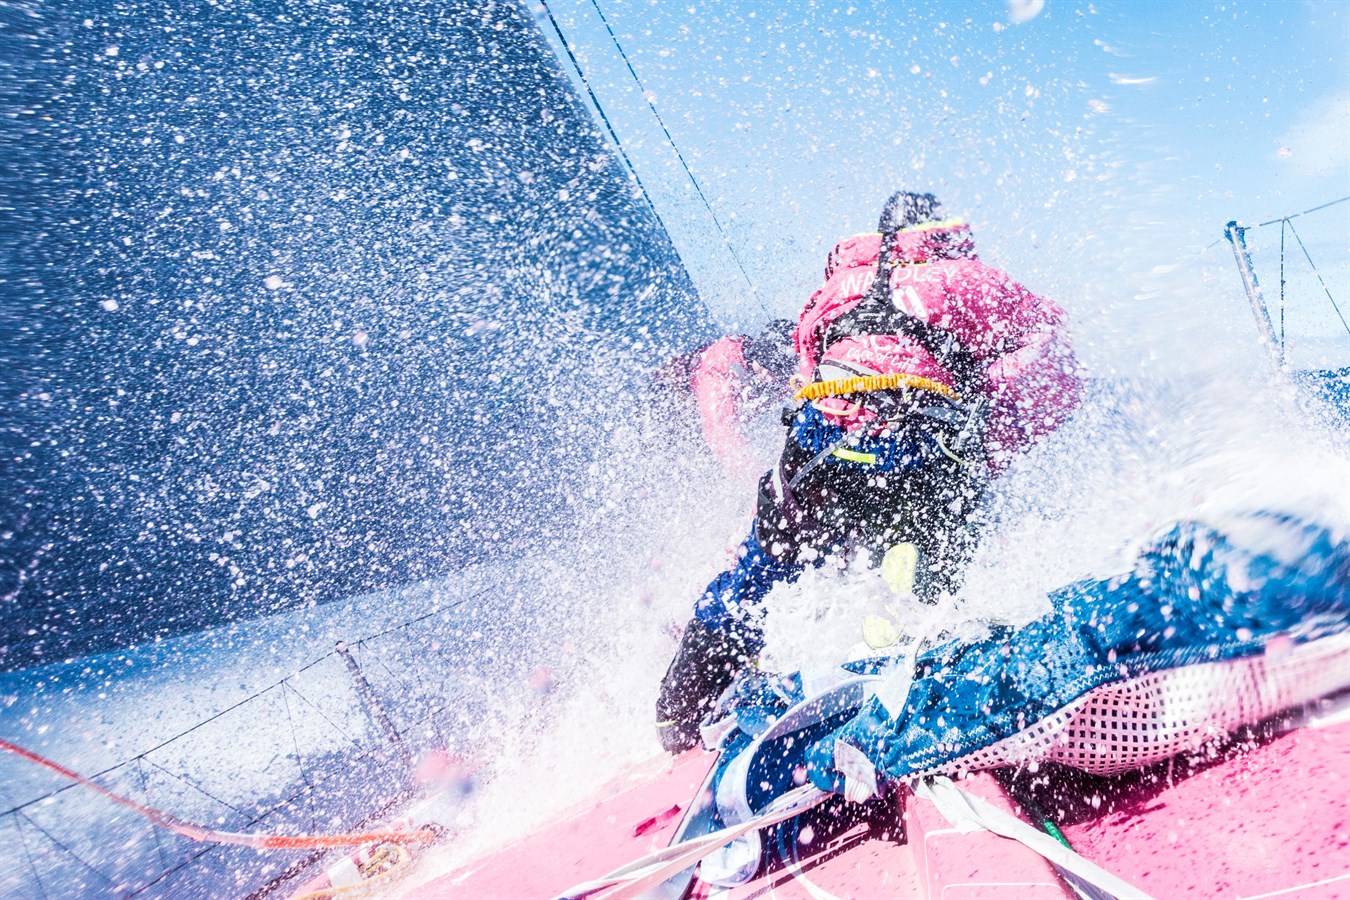 Volvo Ocean Race 2014/2015